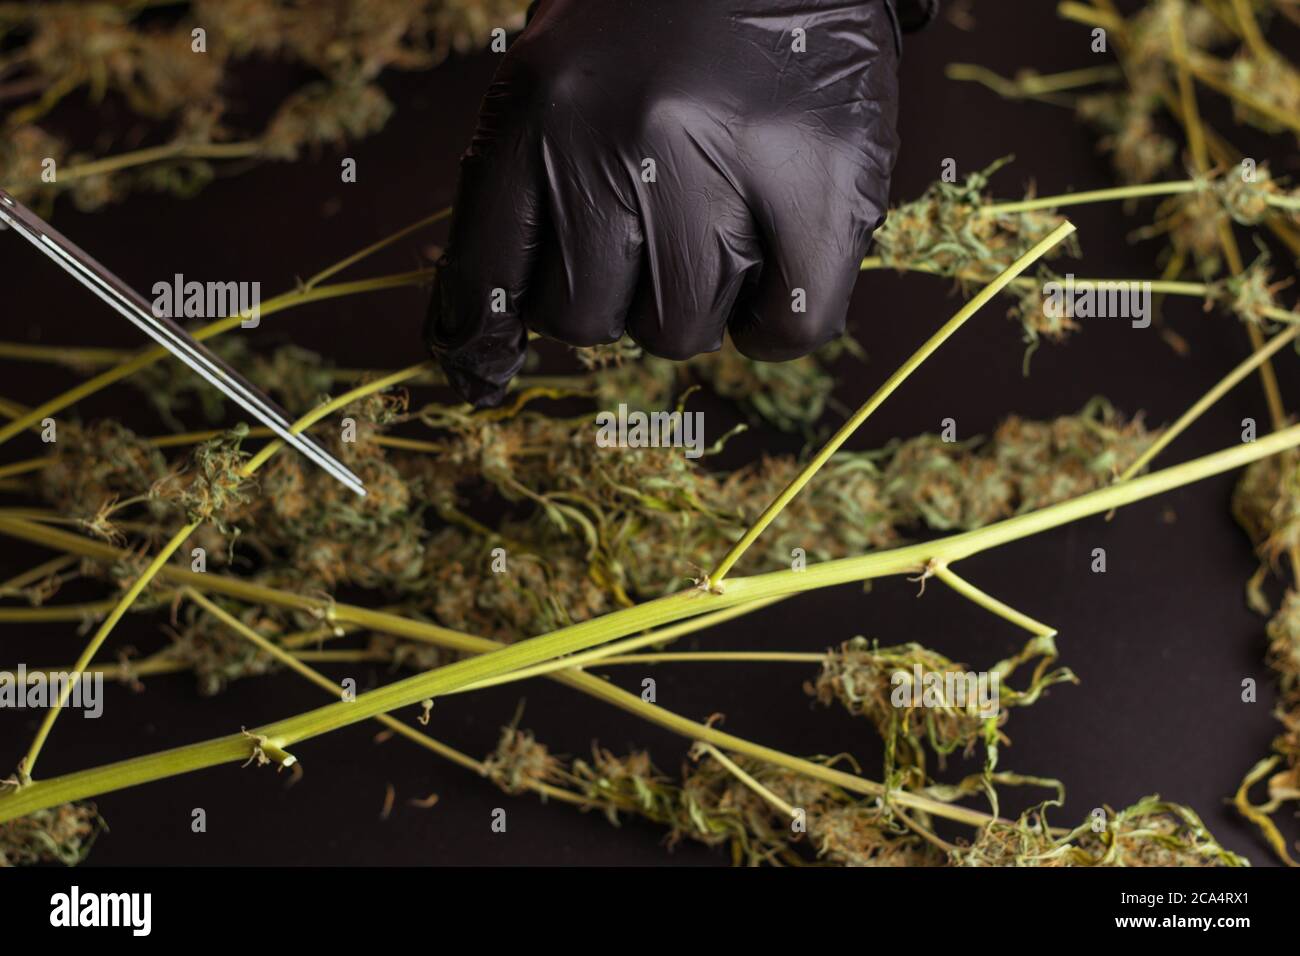 Homme coupant les plantes avec des ciseaux. Traitement du cannabis, commerce de la marijuana. Banque D'Images